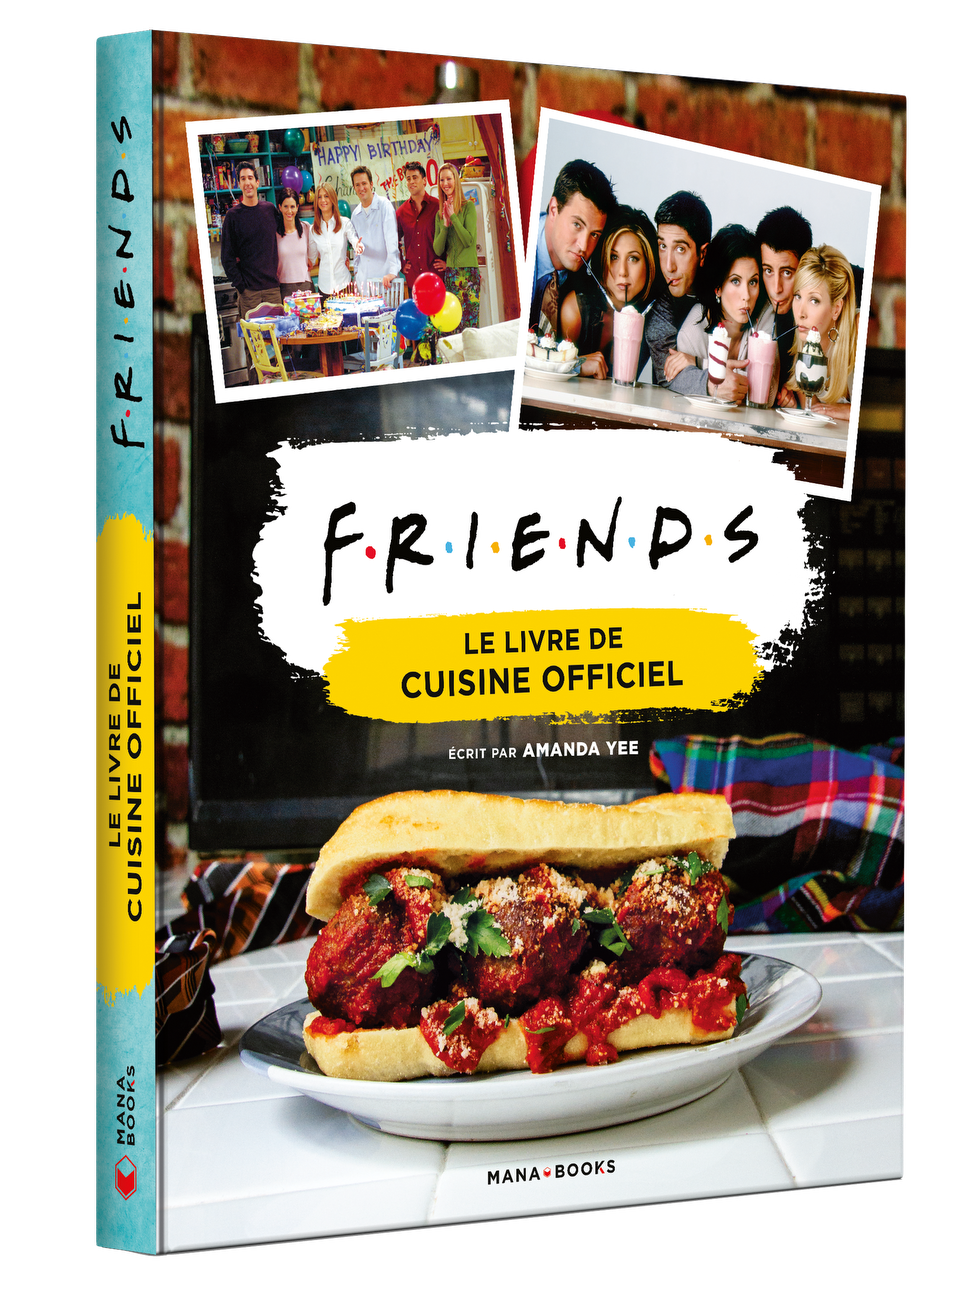 Idee Cadeau Decouvrez Le Livre De Cuisine Officiel De La Serie Friends Journal Du Geek